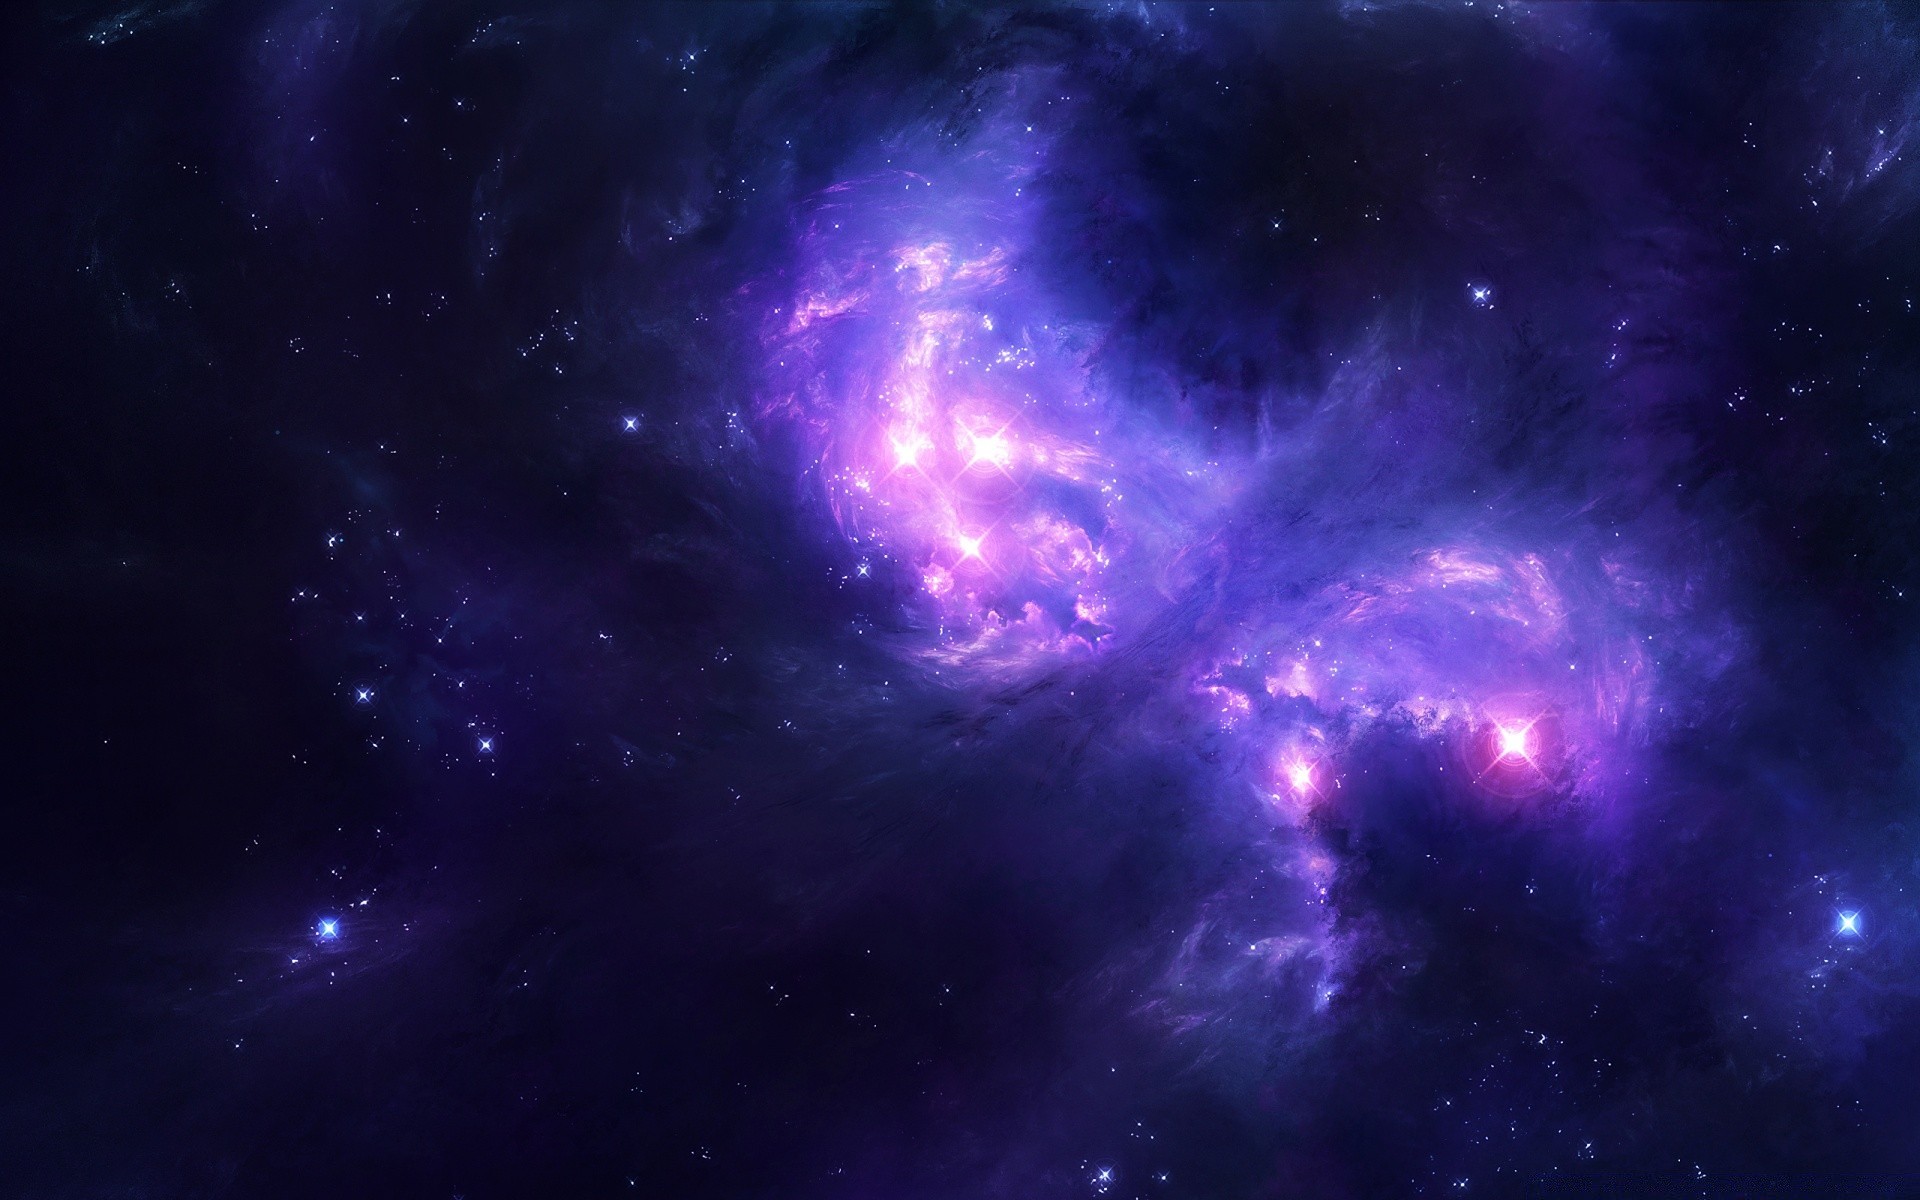 космос астрономия галактика туманность созвездие бесконечность разведка луна астрология космос глубокий телескоп плазмы стеллар внешний фантазия пыль наука тайна аннотация